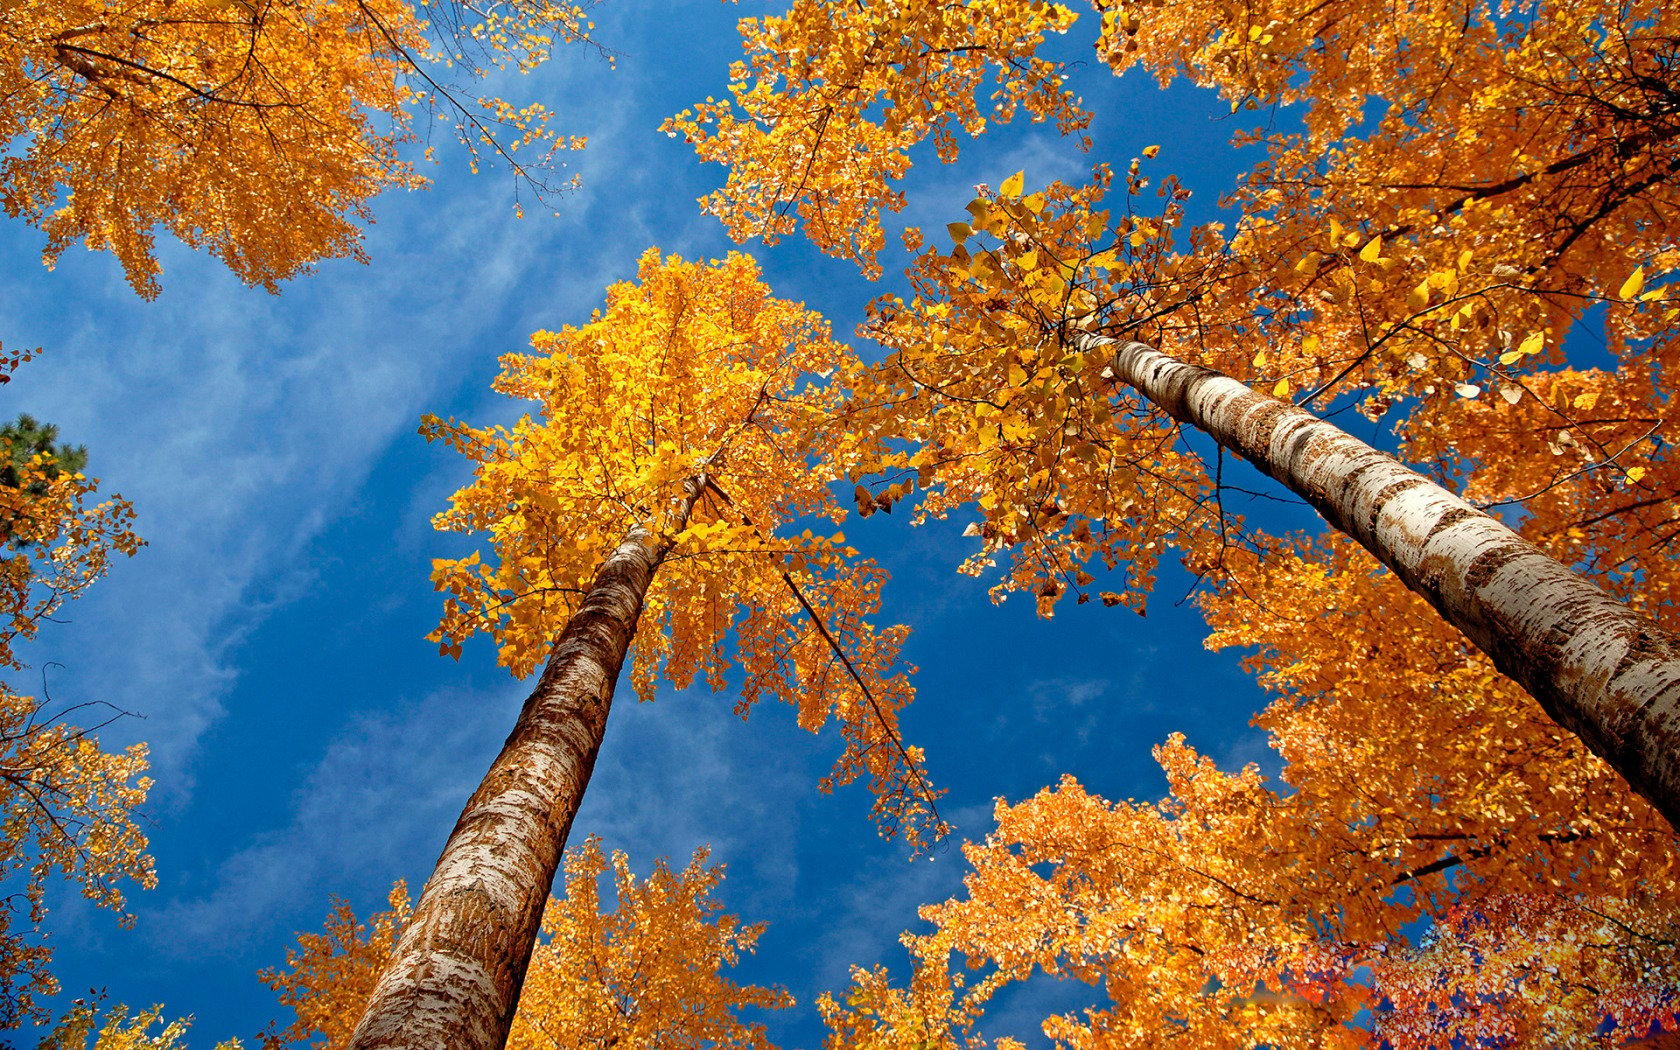 Sunny Fall Day Widescreen Wallpaper. Wide Wallpaper.NET